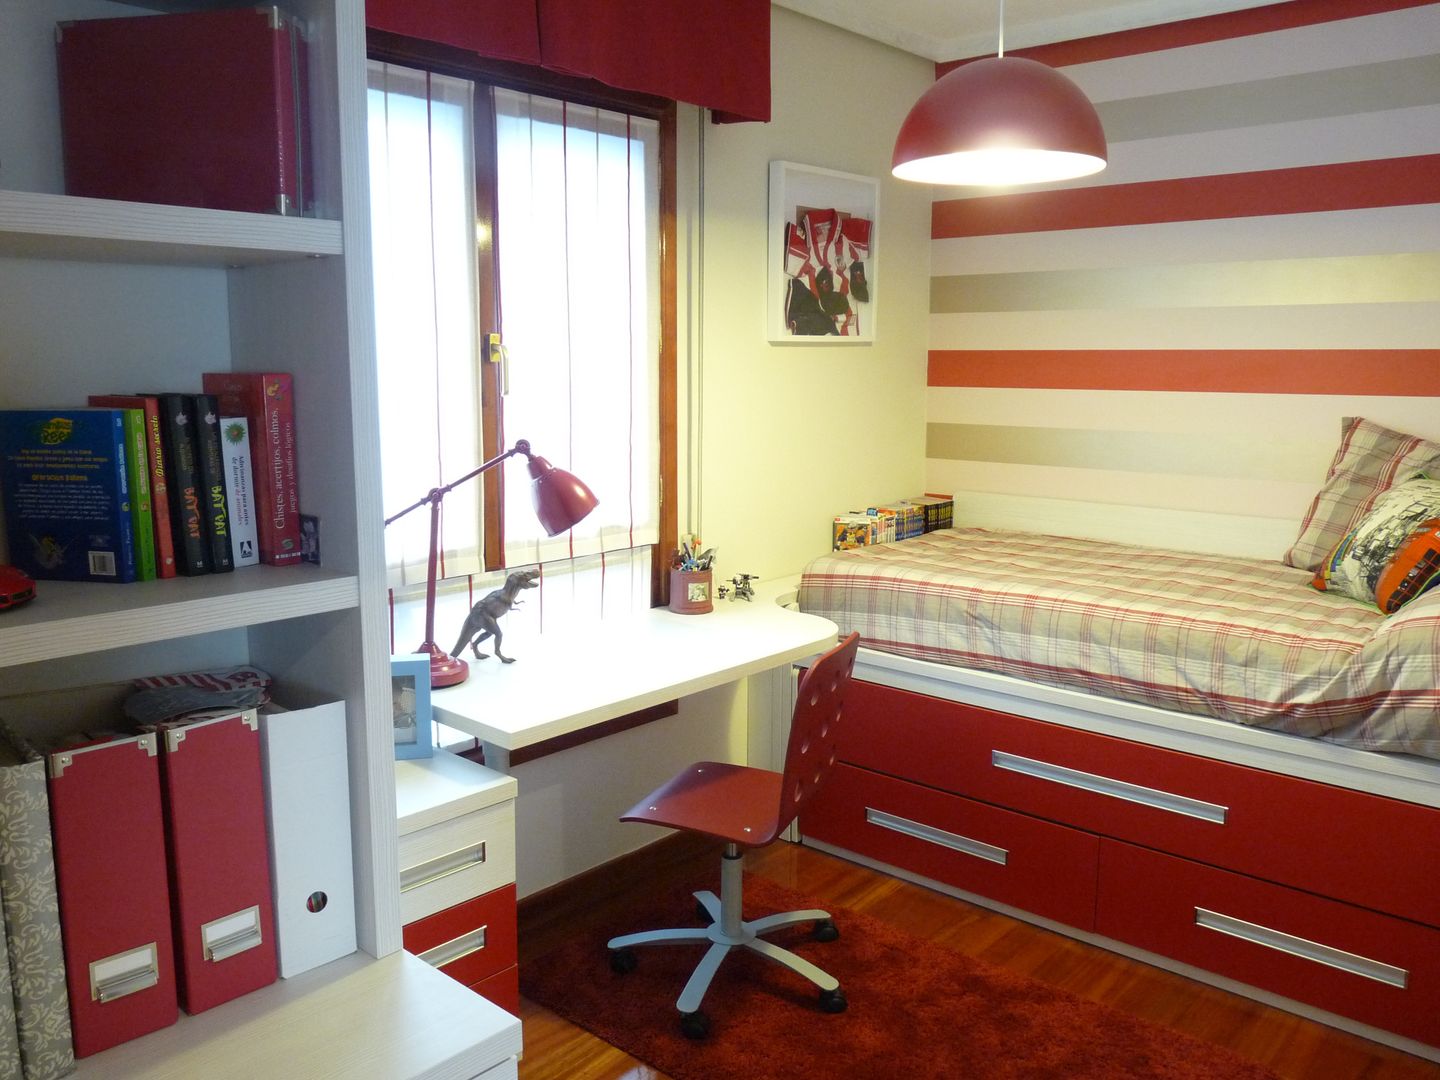 Una habitación juvenil para un joven gran seguidor del Athletic de Bilbao, Dec&You Dec&You 嬰兒房/兒童房